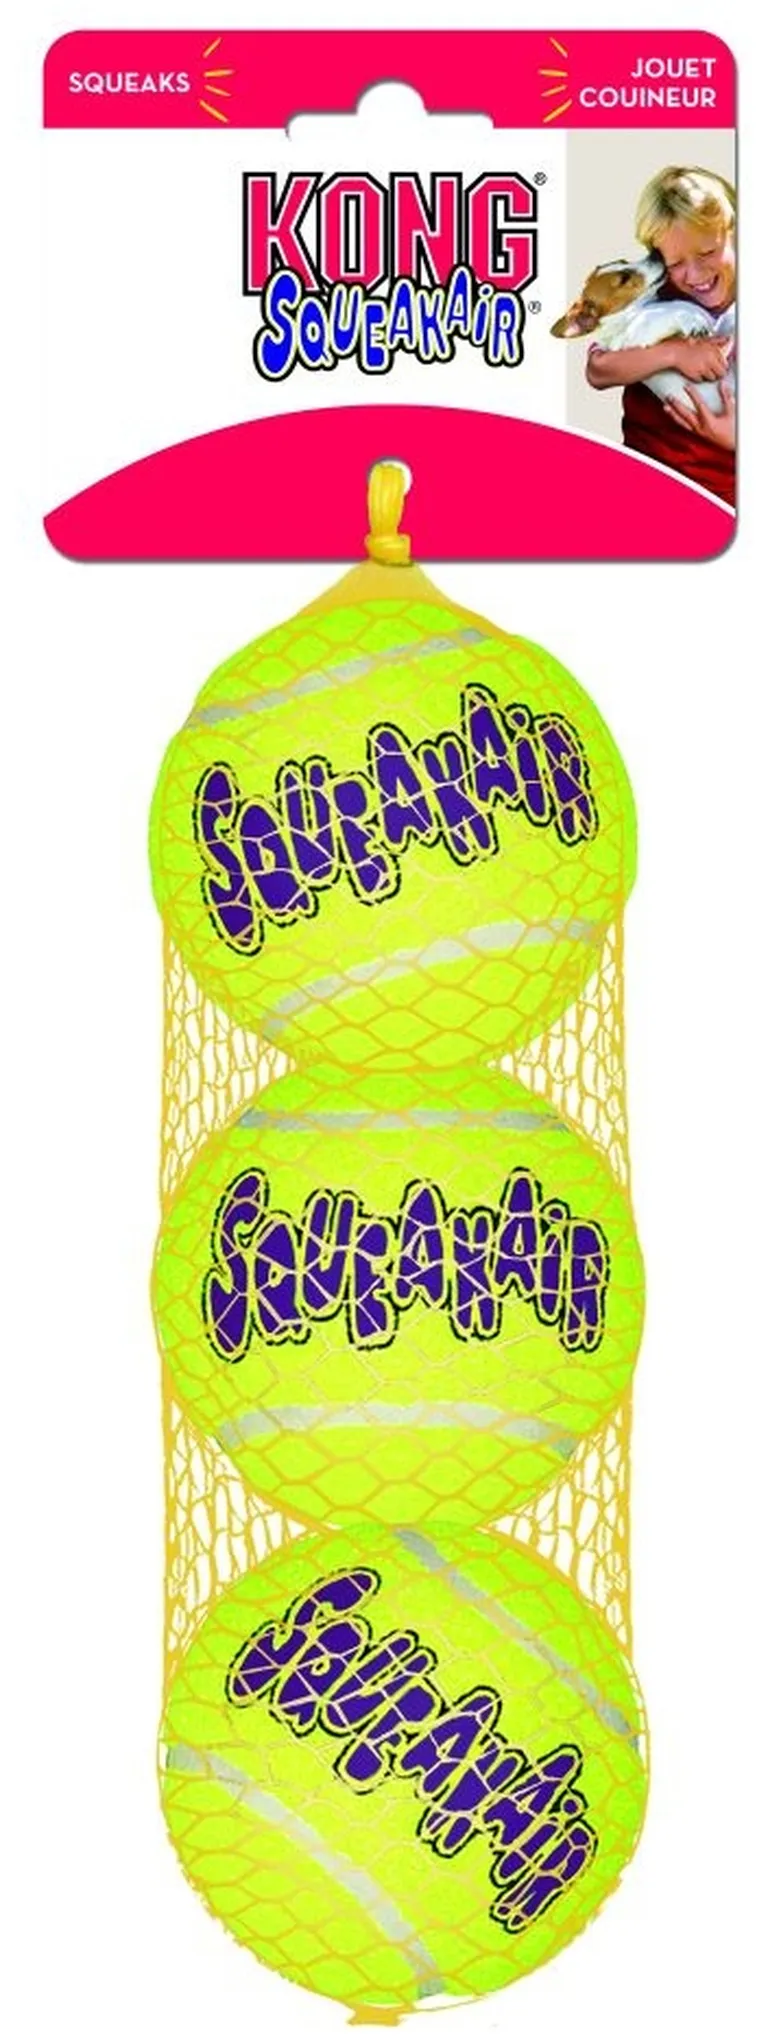 Kong Air Kong Squeakers Tennis Balls Photo 1